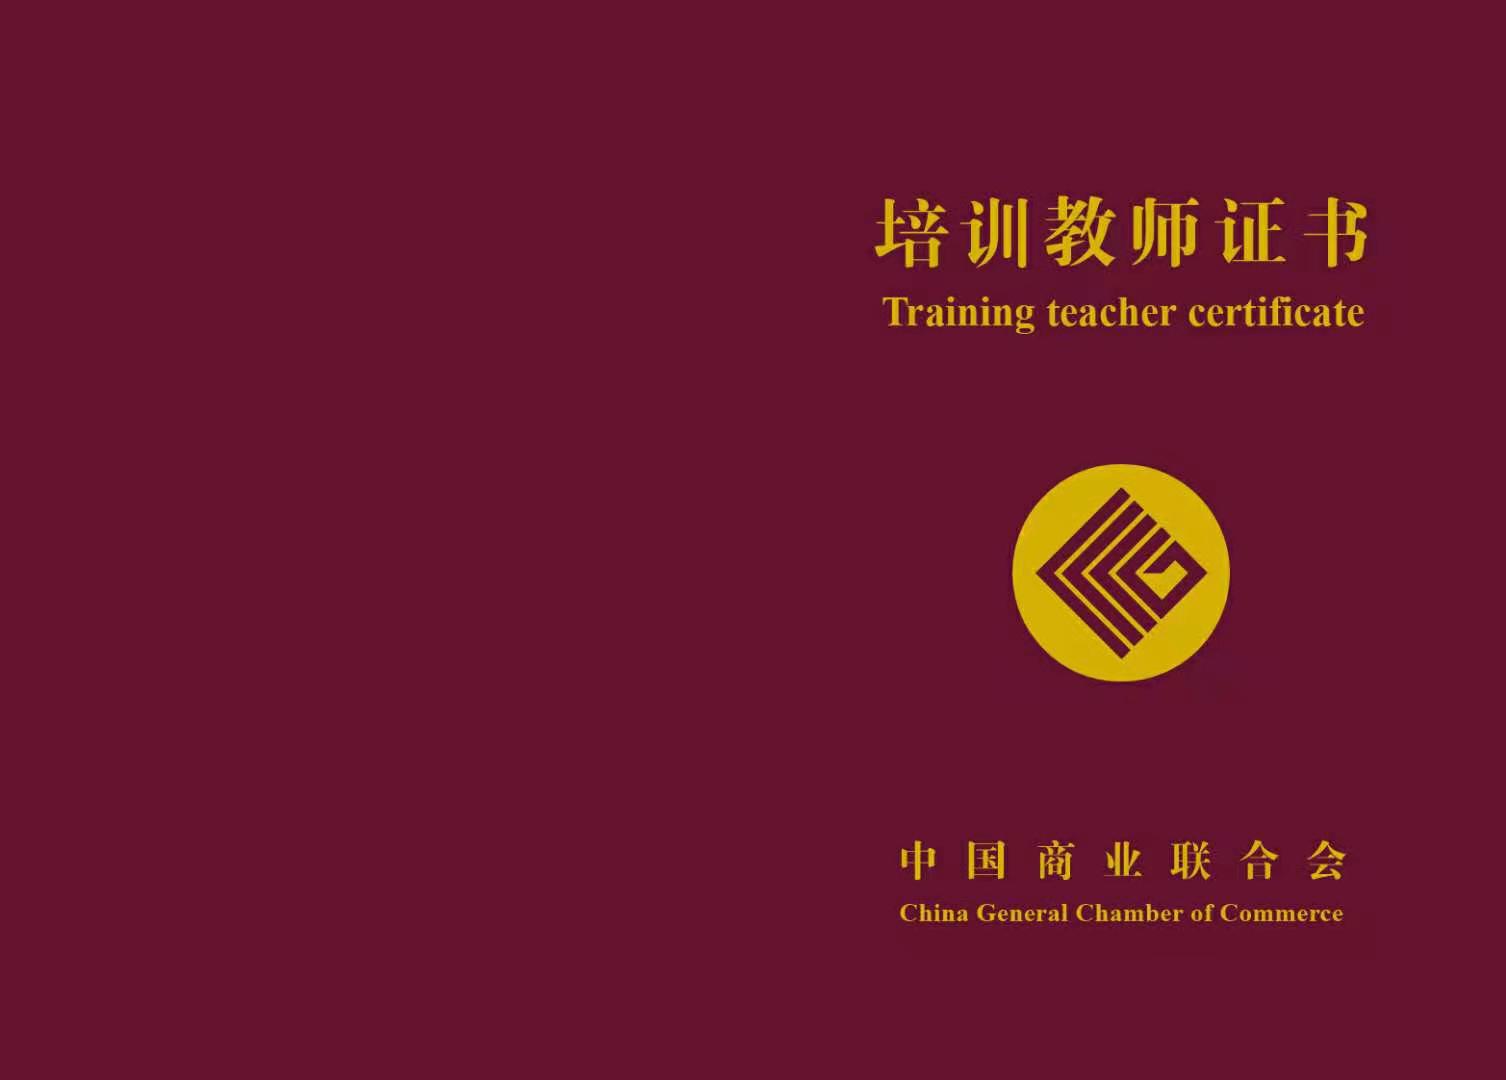 中国商业联合会职业能力培训